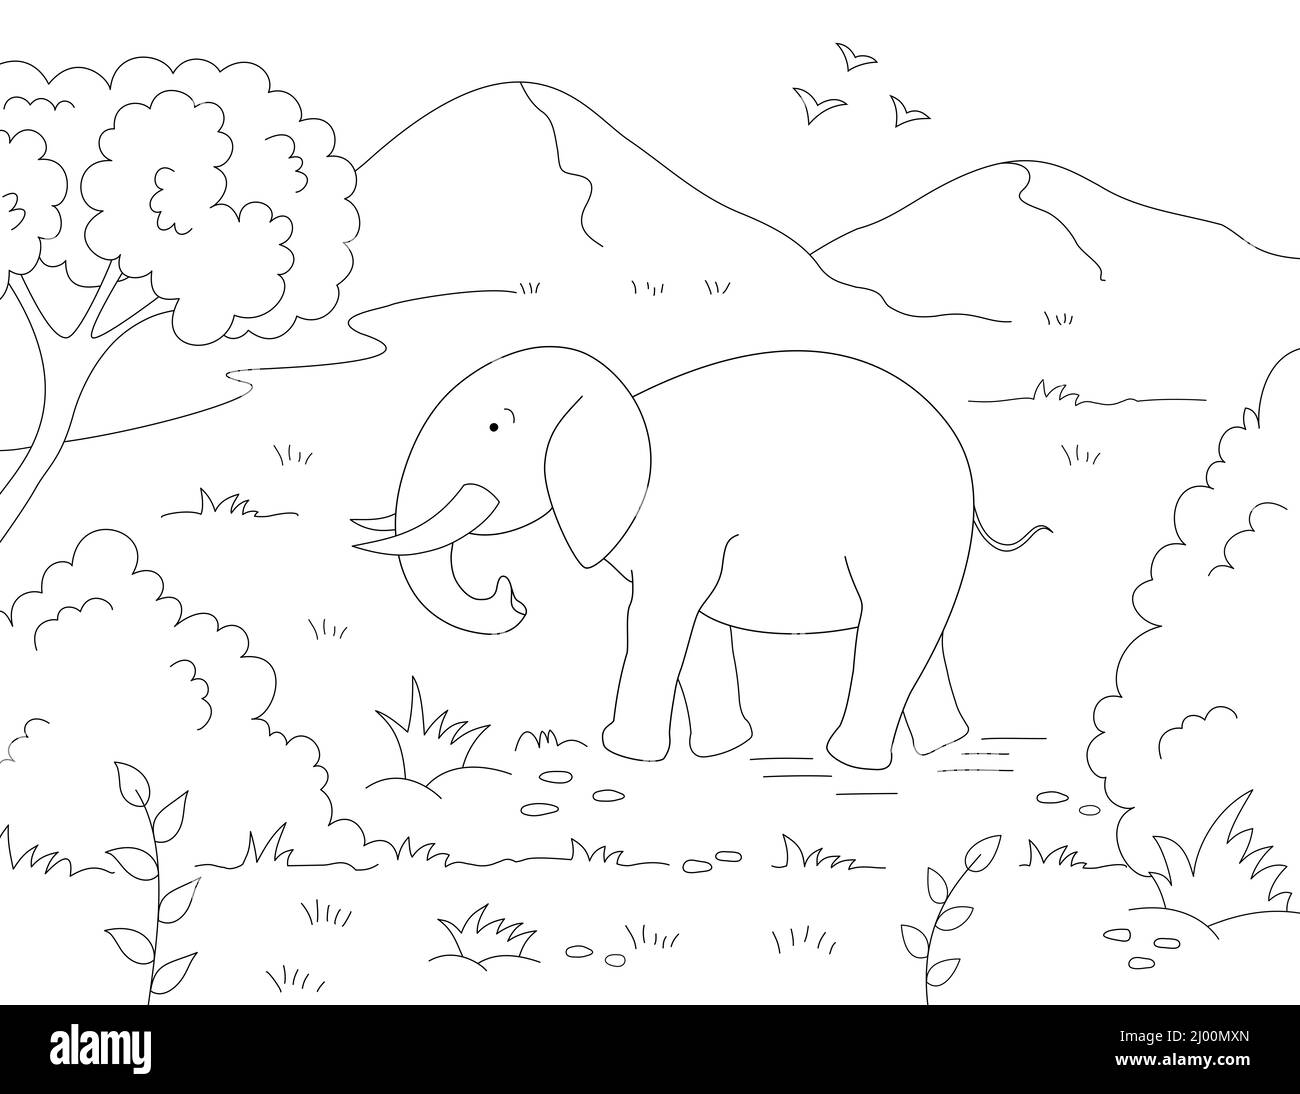 Szene mit Bergen, Vögeln und einem Elefanten beim Gehen. Schwarz-weiß Umrisszeichnung Stockfoto